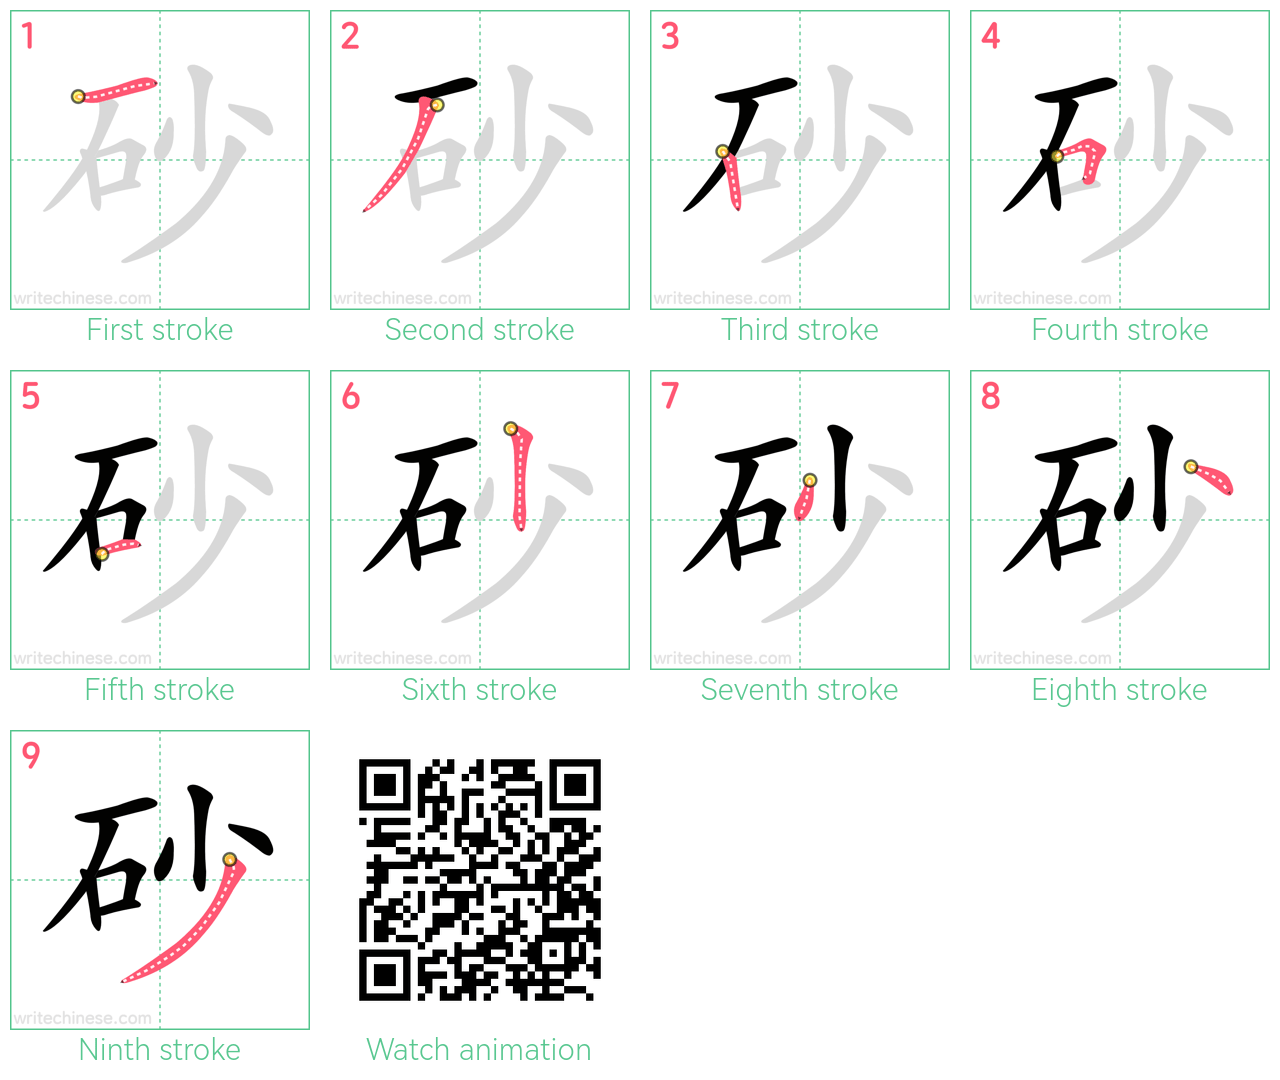 砂 step-by-step stroke order diagrams